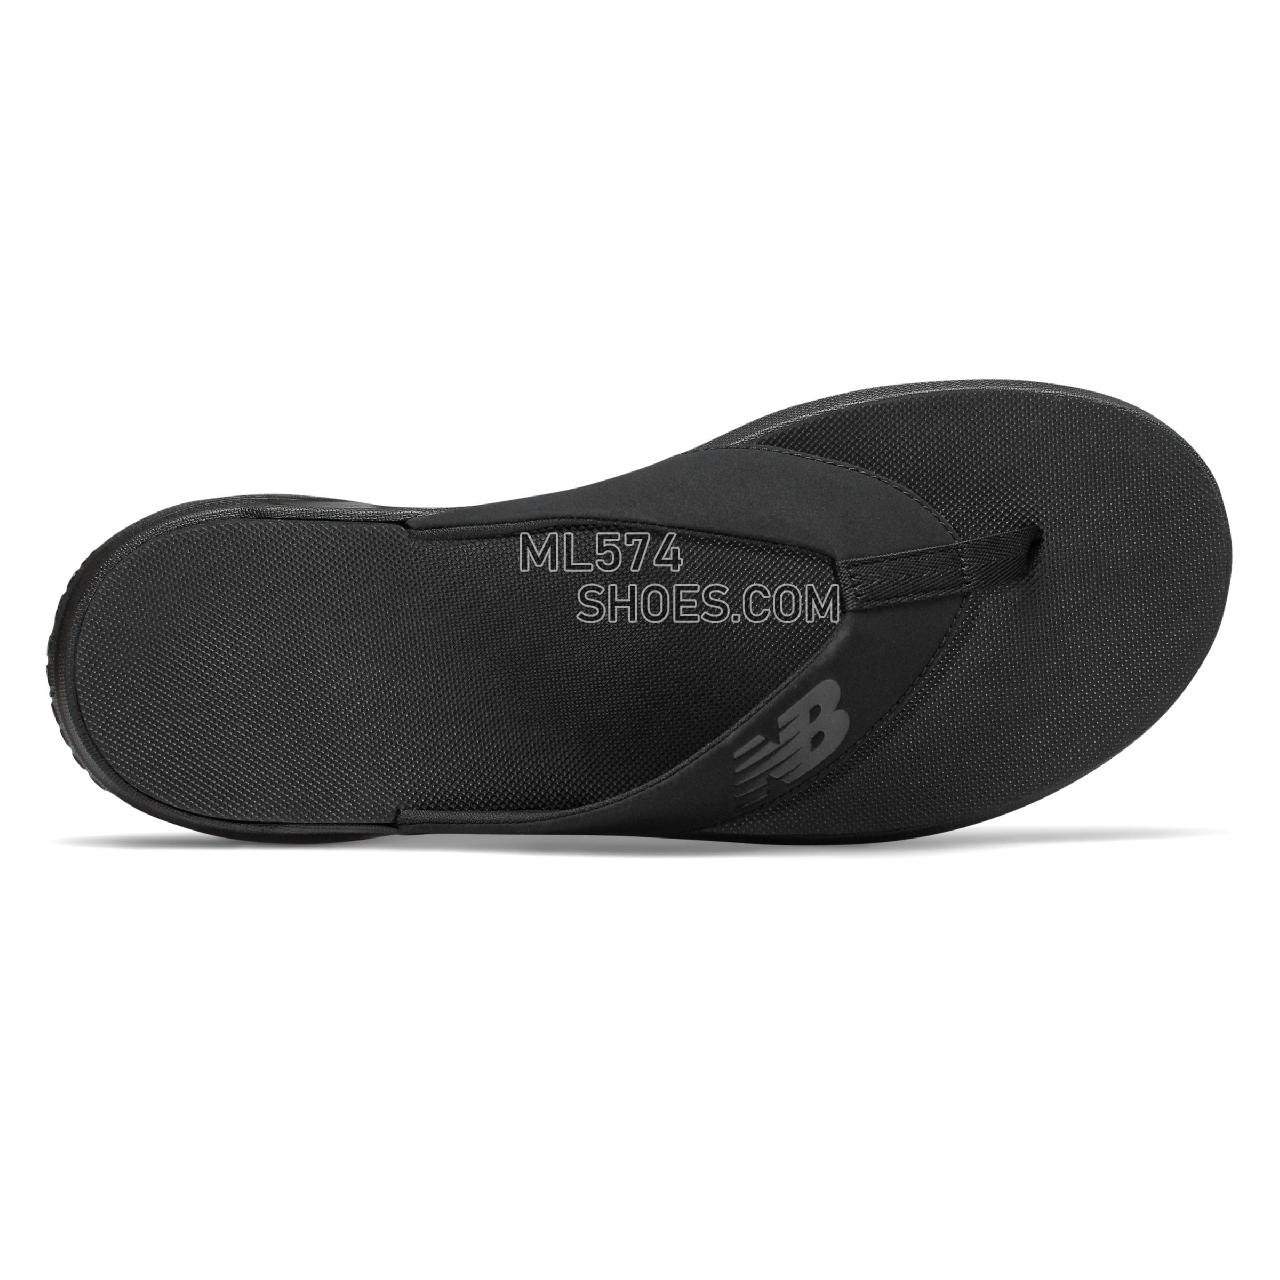 New Balance 340 - Men's Flip Flops - Black with Magnet - SMT340K1